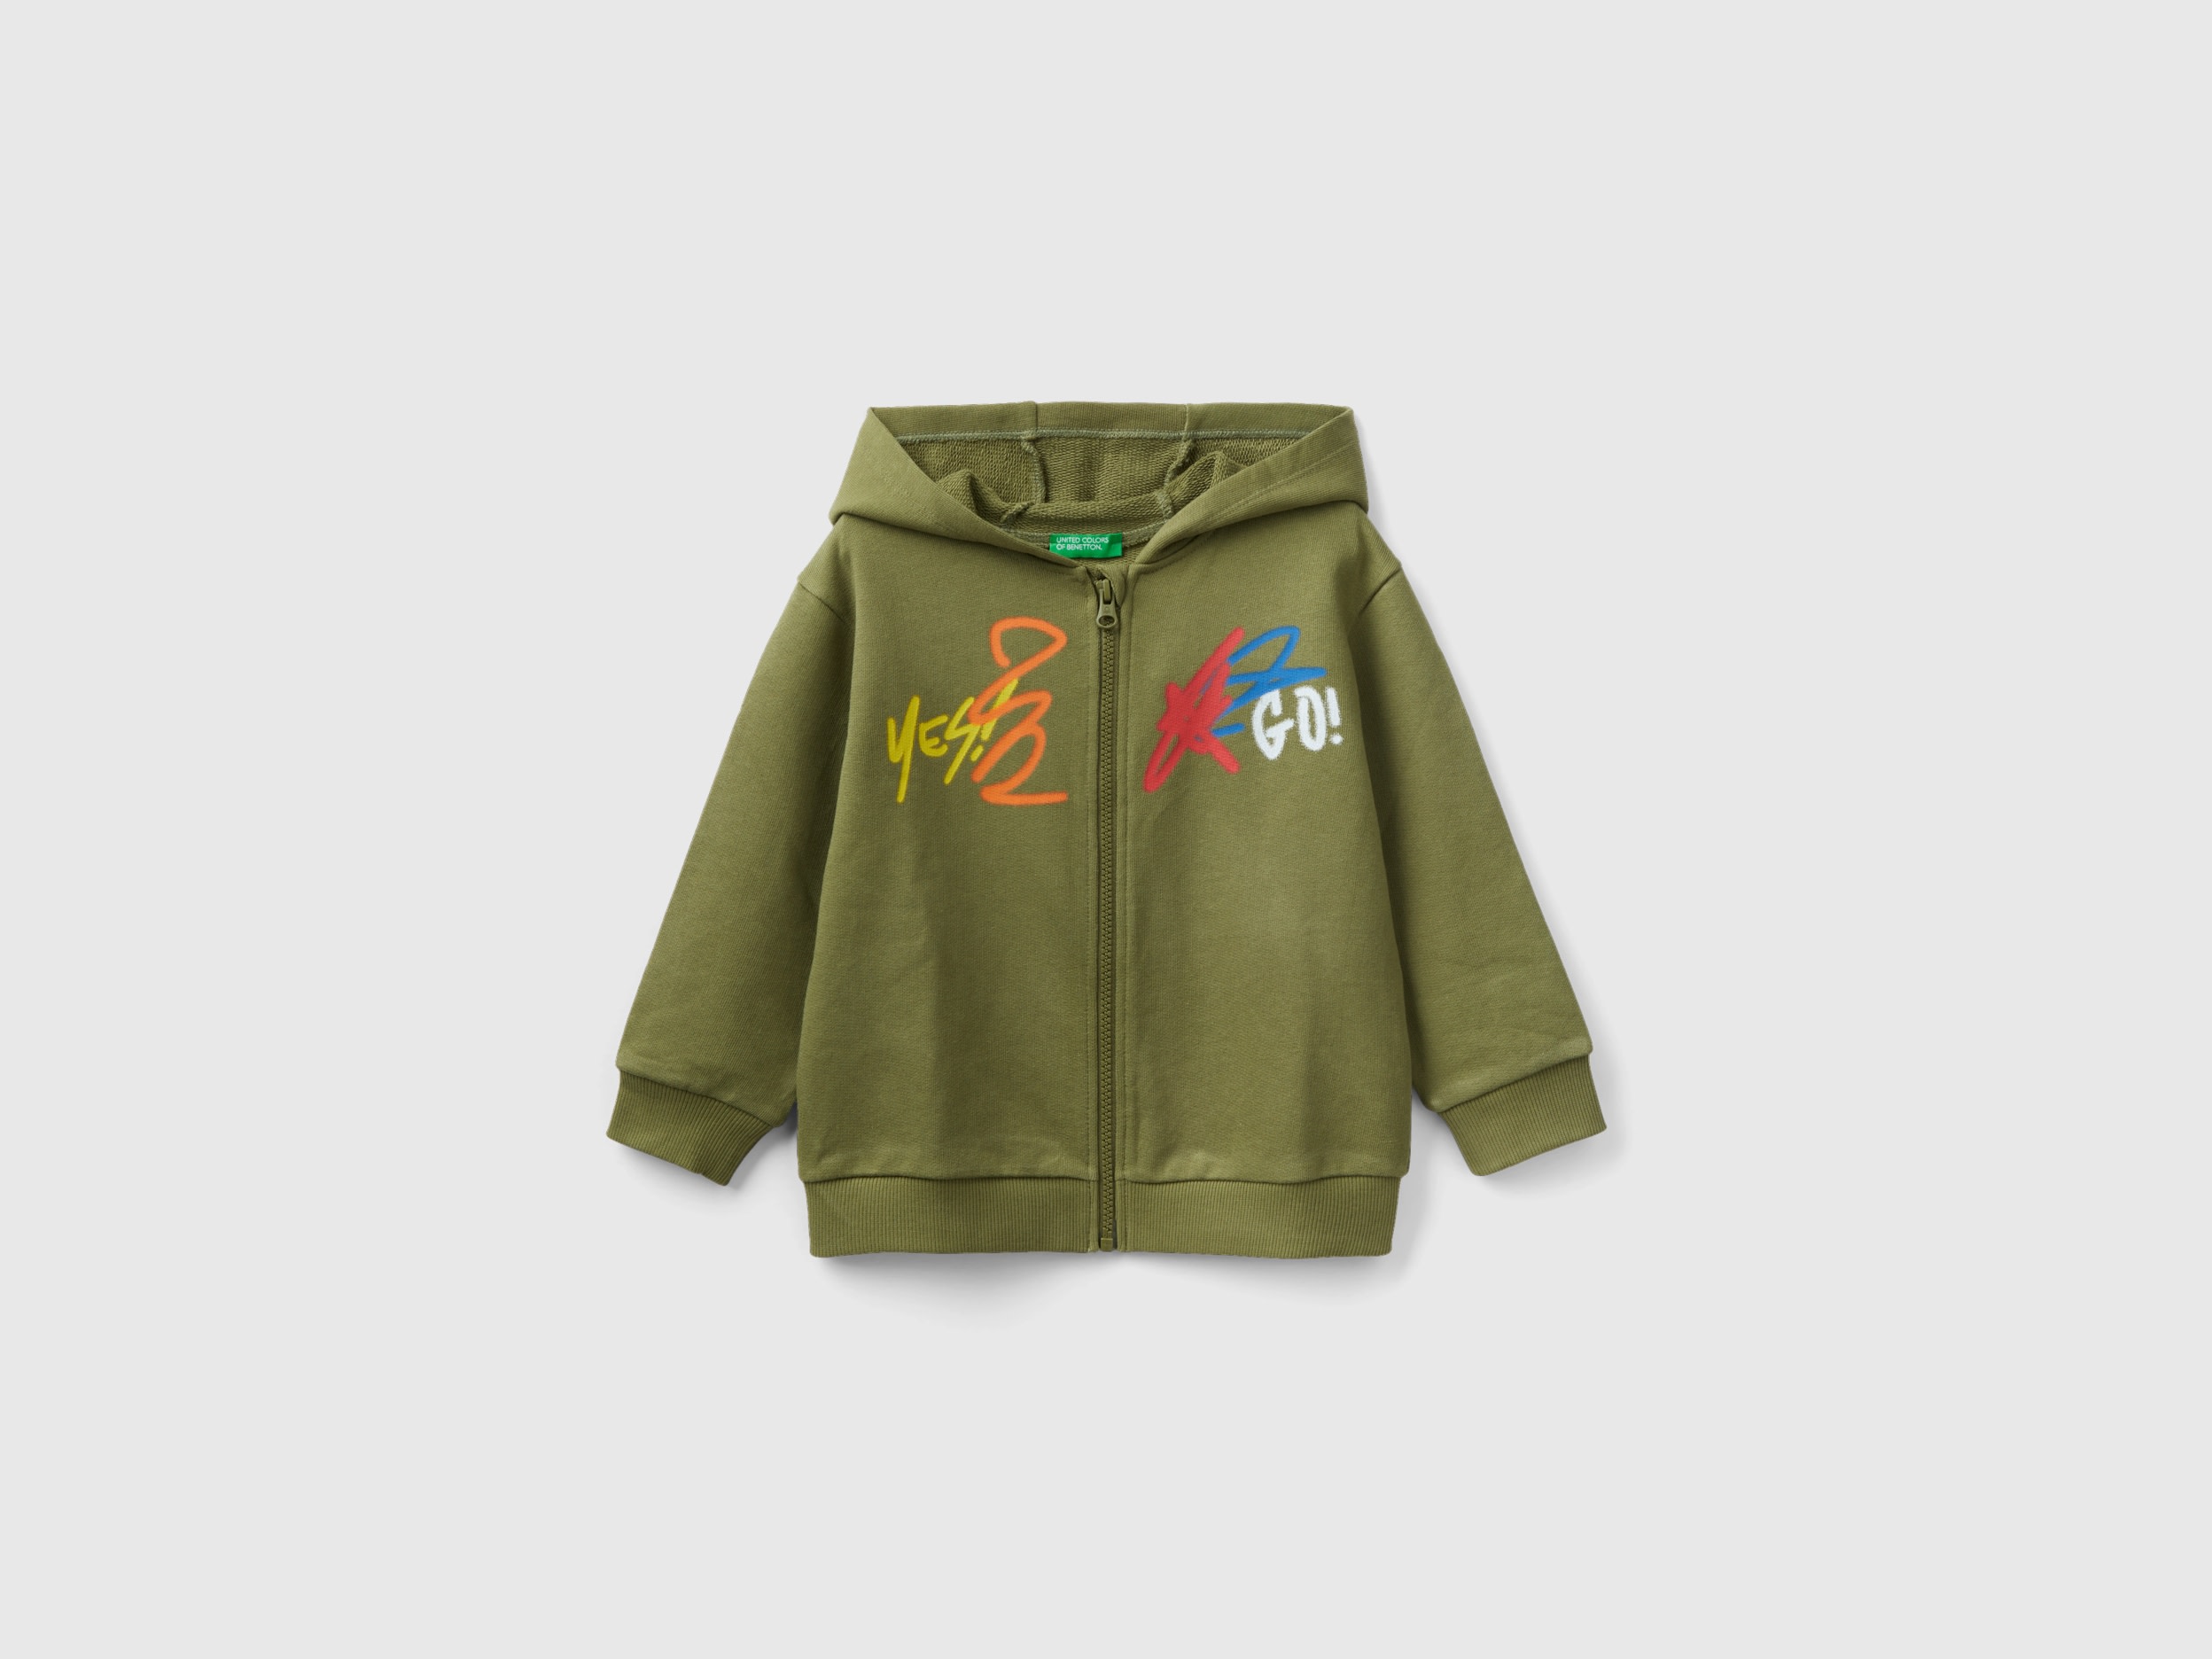 Benetton, Oversize Sweatshirt With Hood, size 2-3, Military Green, Kids